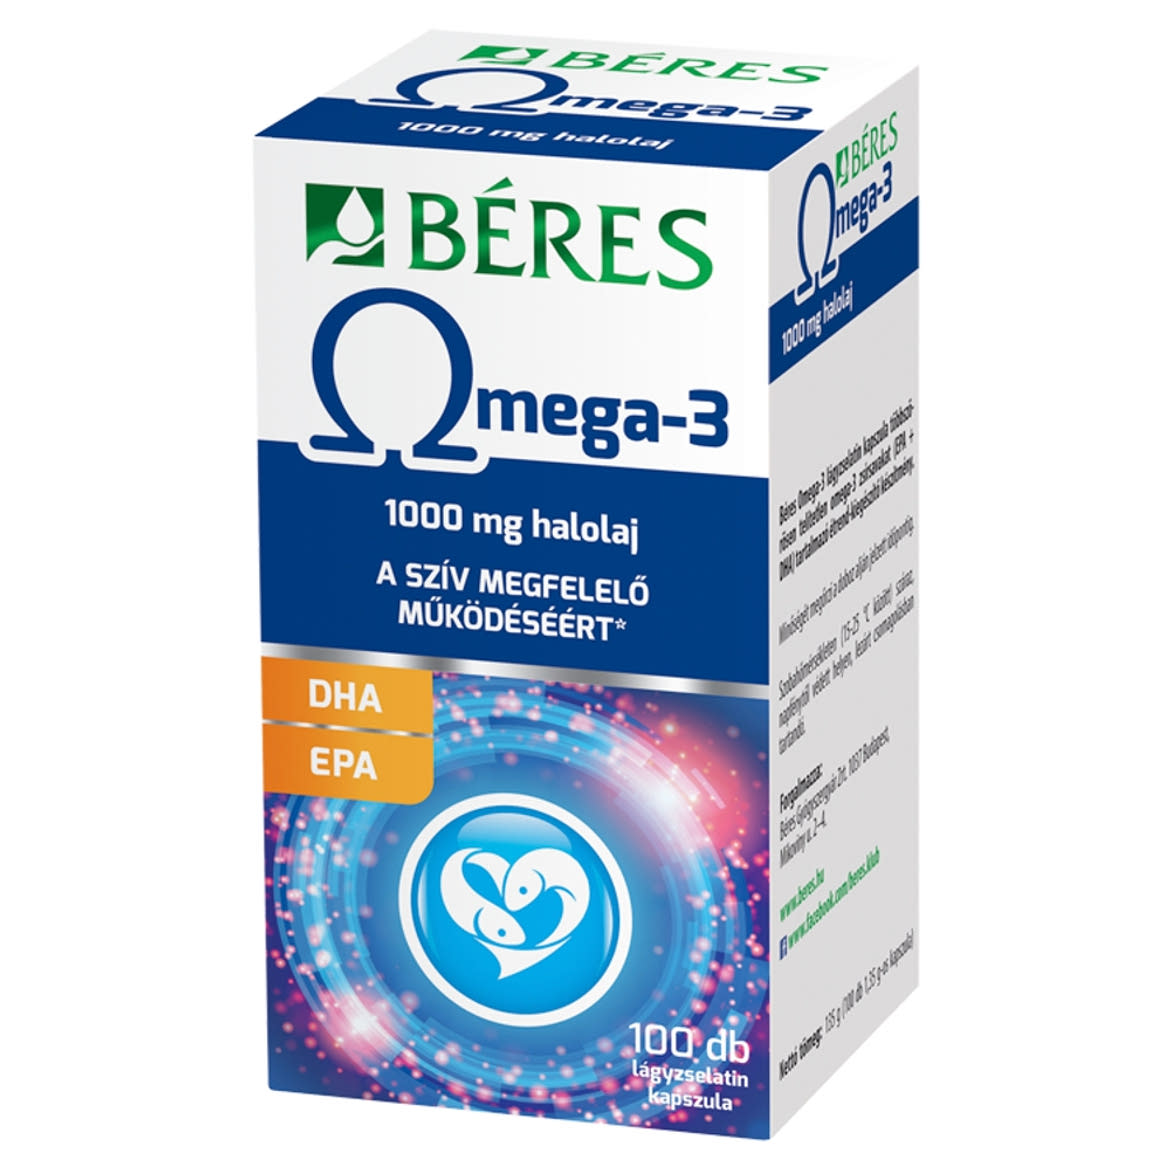 BÃ©res Omega-3 1000 mg halolaj lÃ¡gyzselatin kapszula